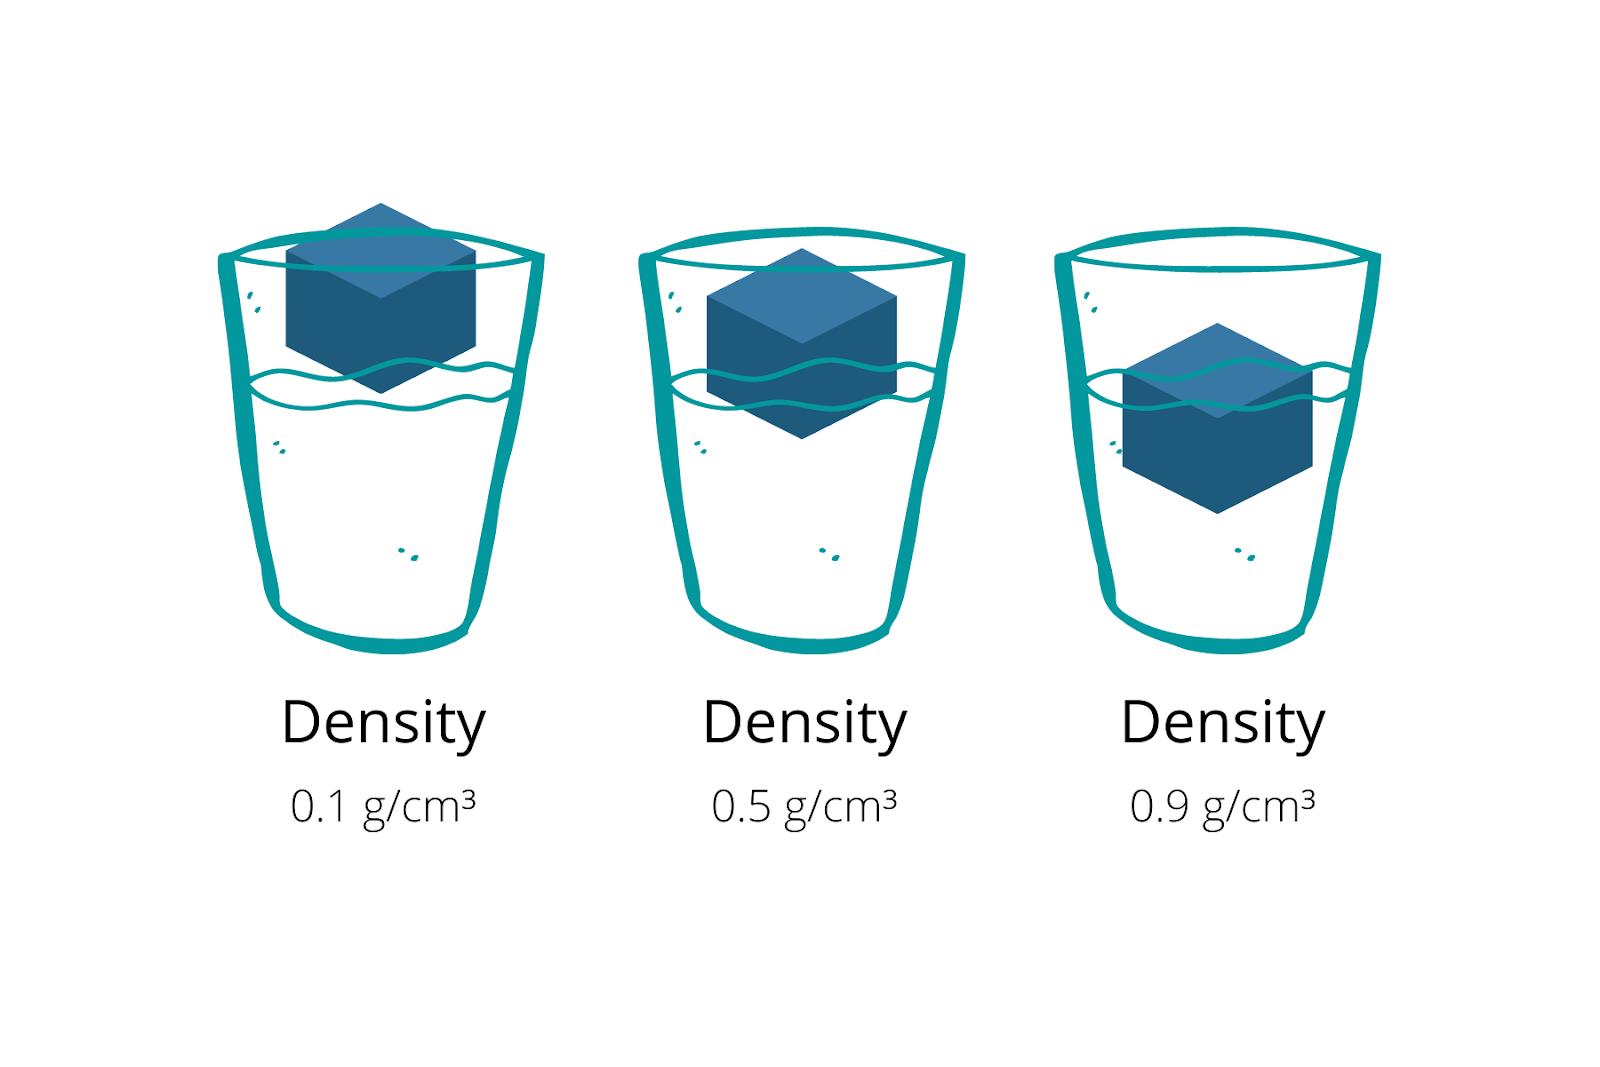 Density of Water